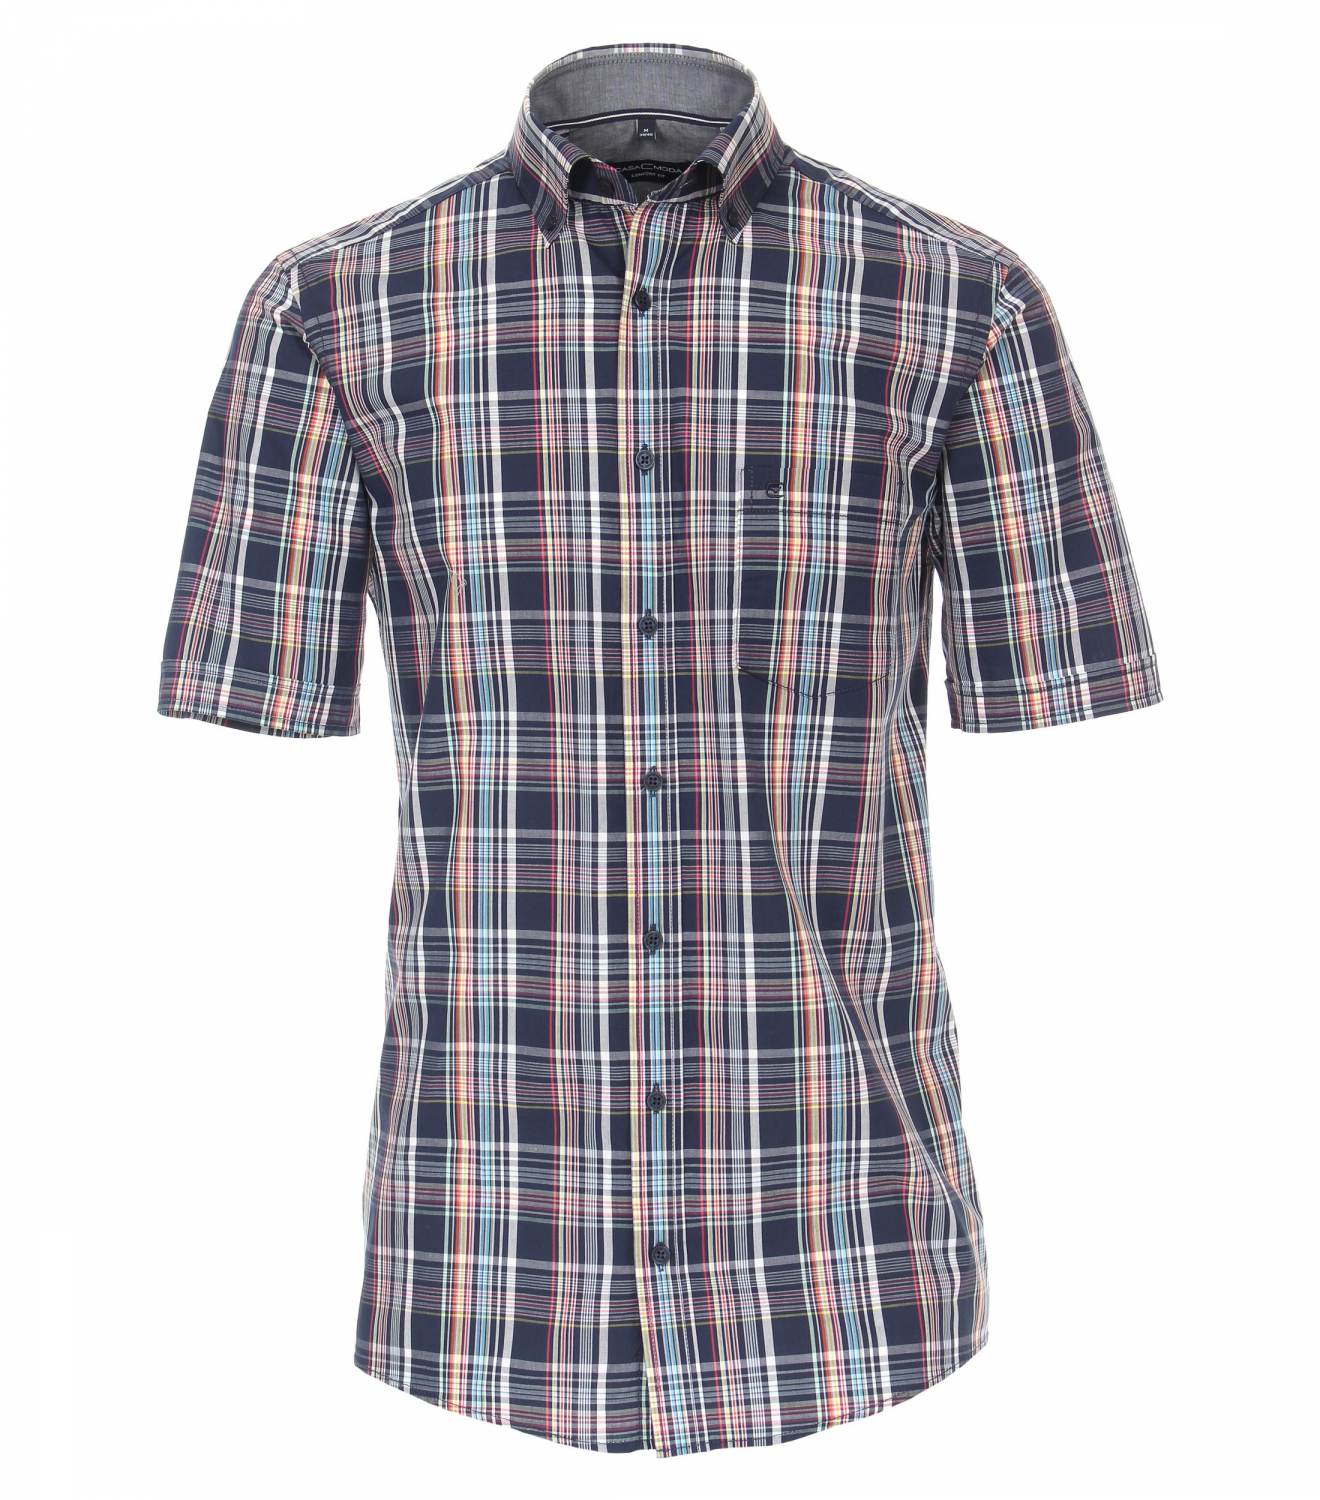 Casa Moda Casual Navy Check Short Sleeve Shirt - Con Murphys Menswear